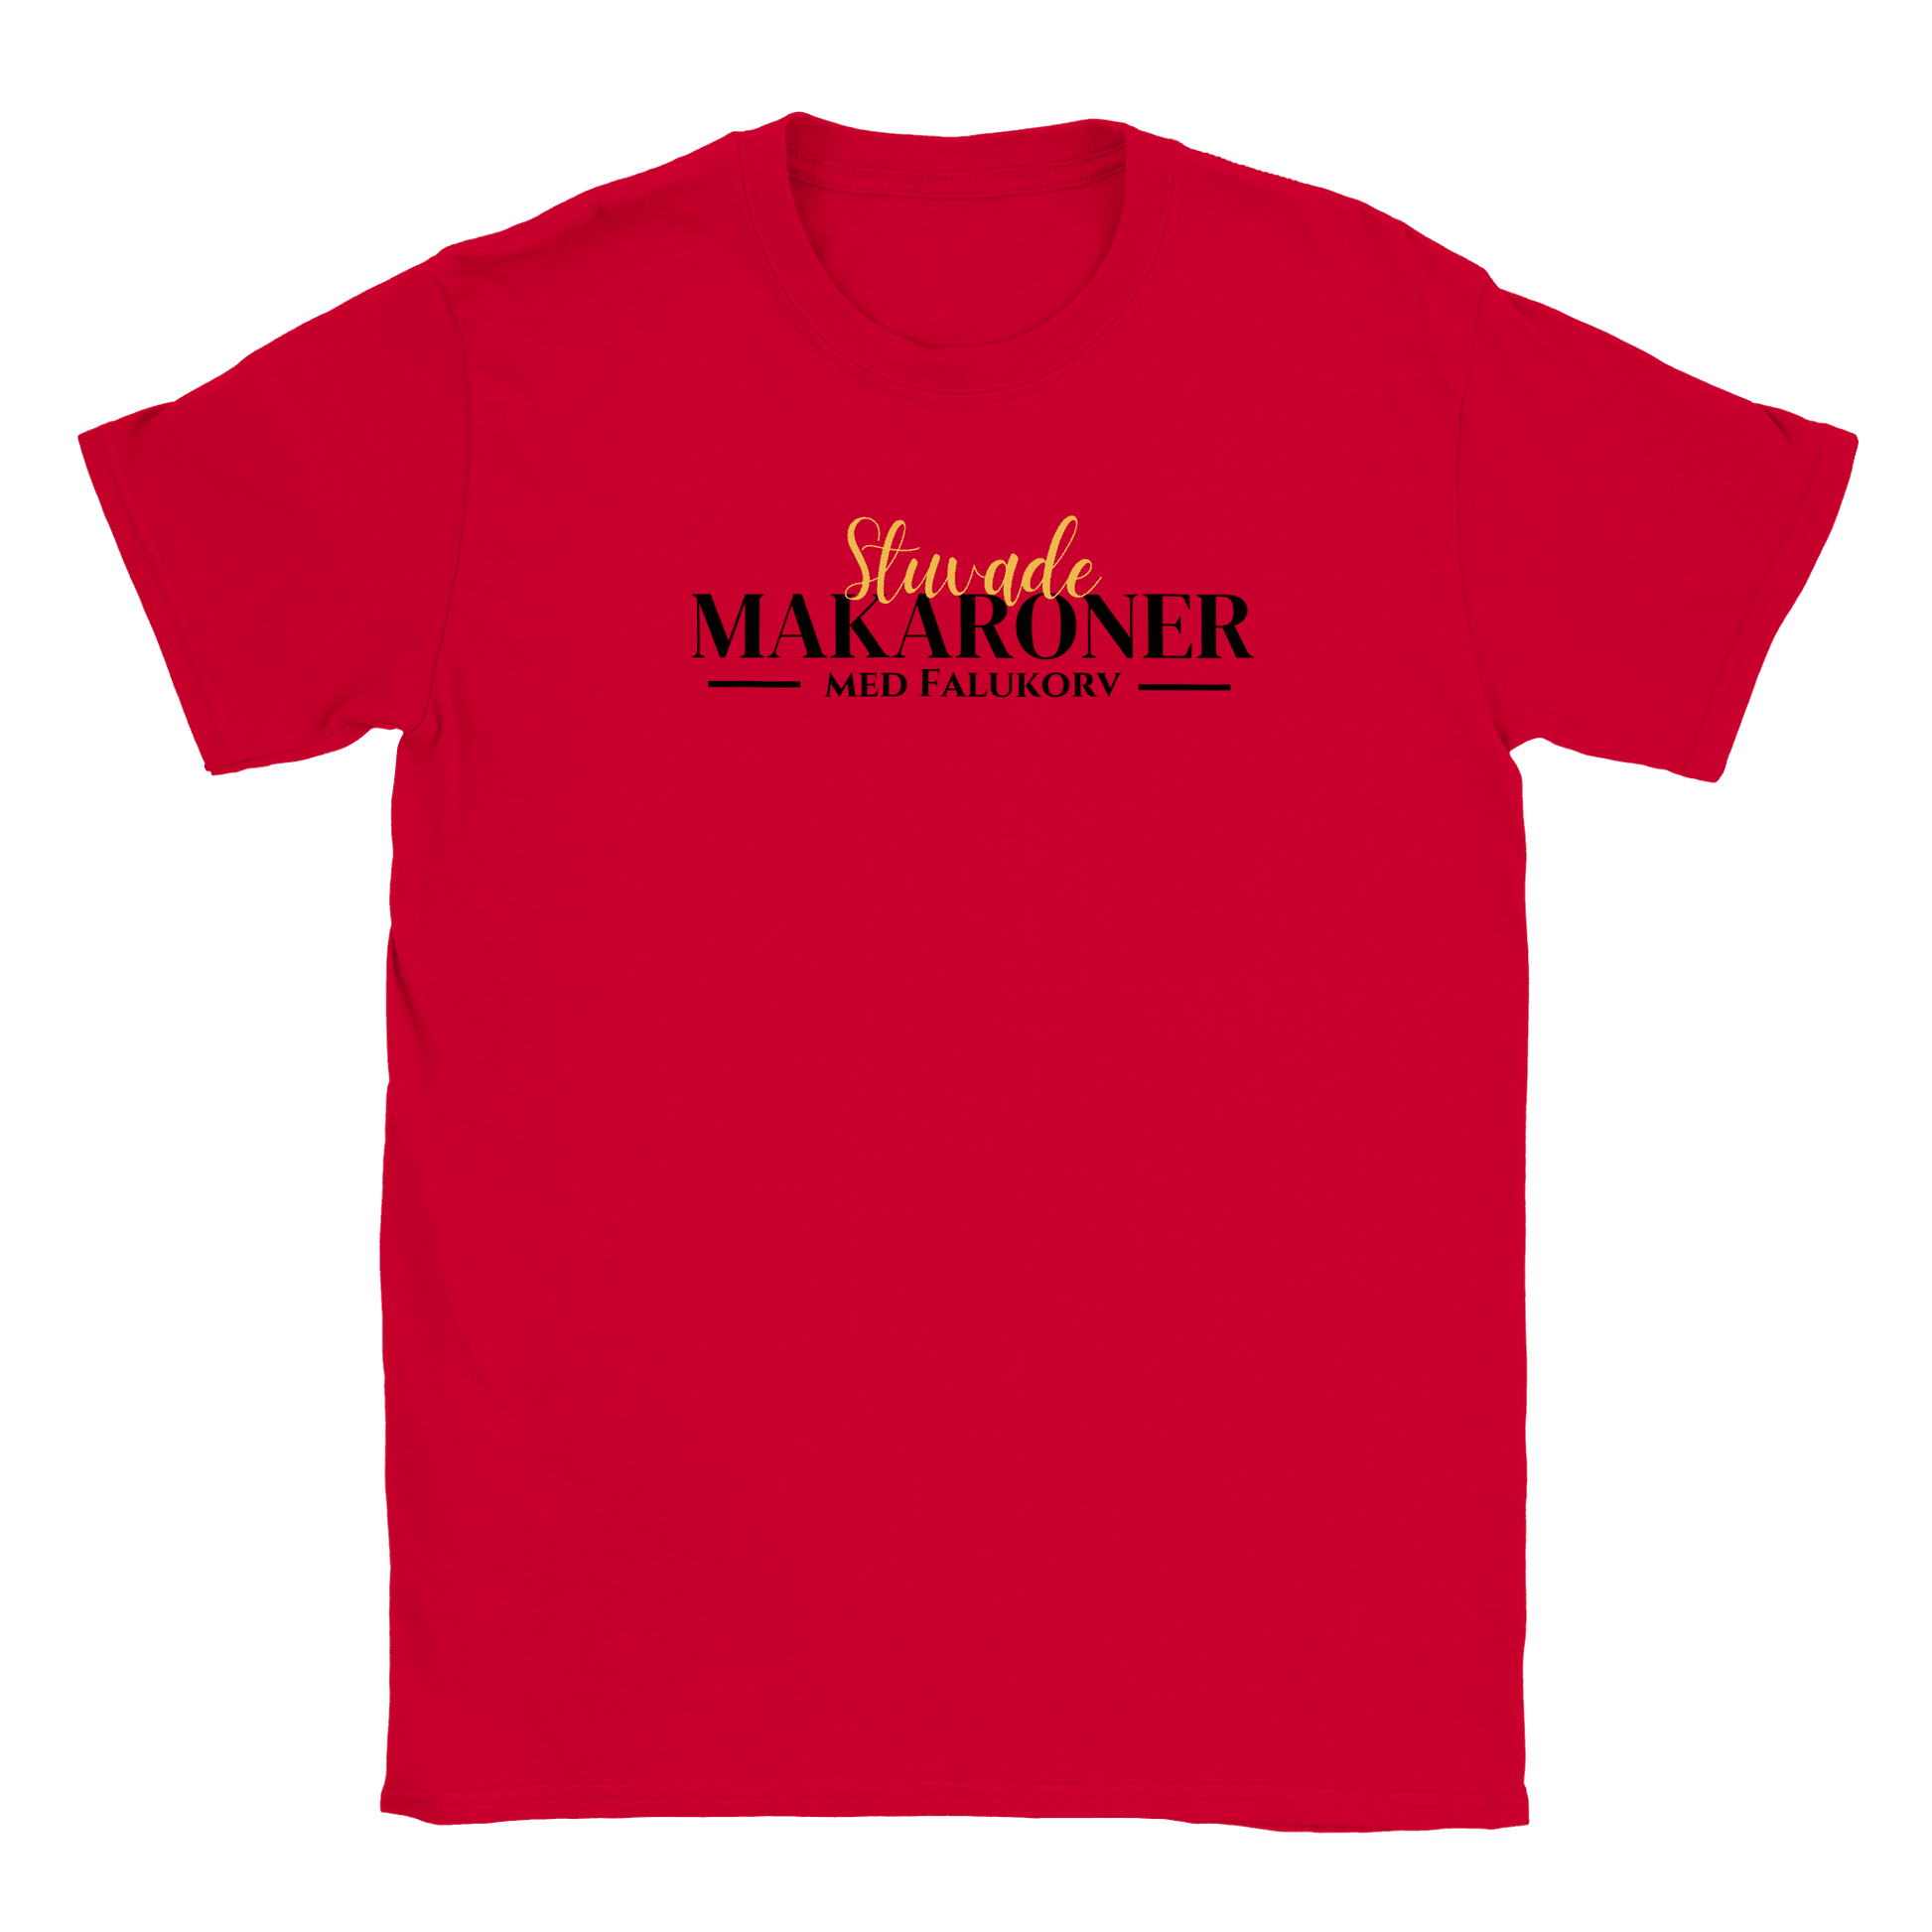 Stuvade makaroner med falukorv - T-shirt för barn Röd